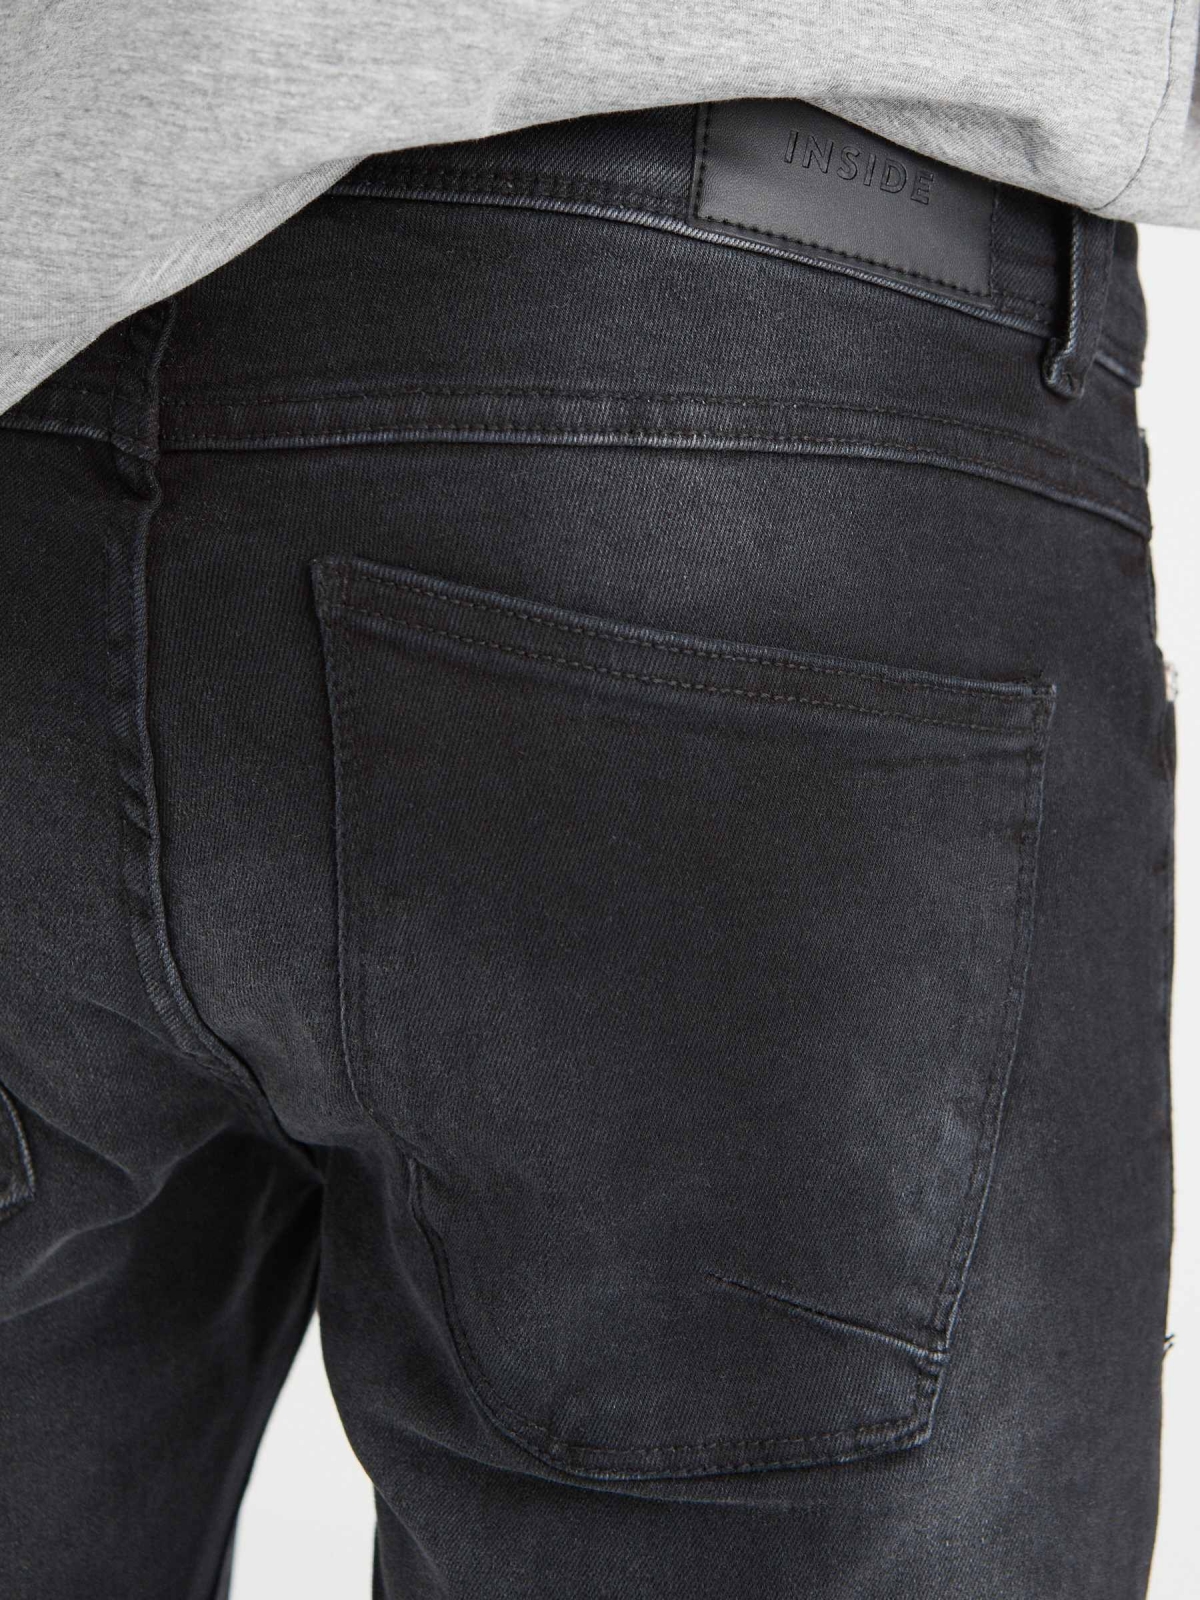 Washed black super slim jeans black detail view